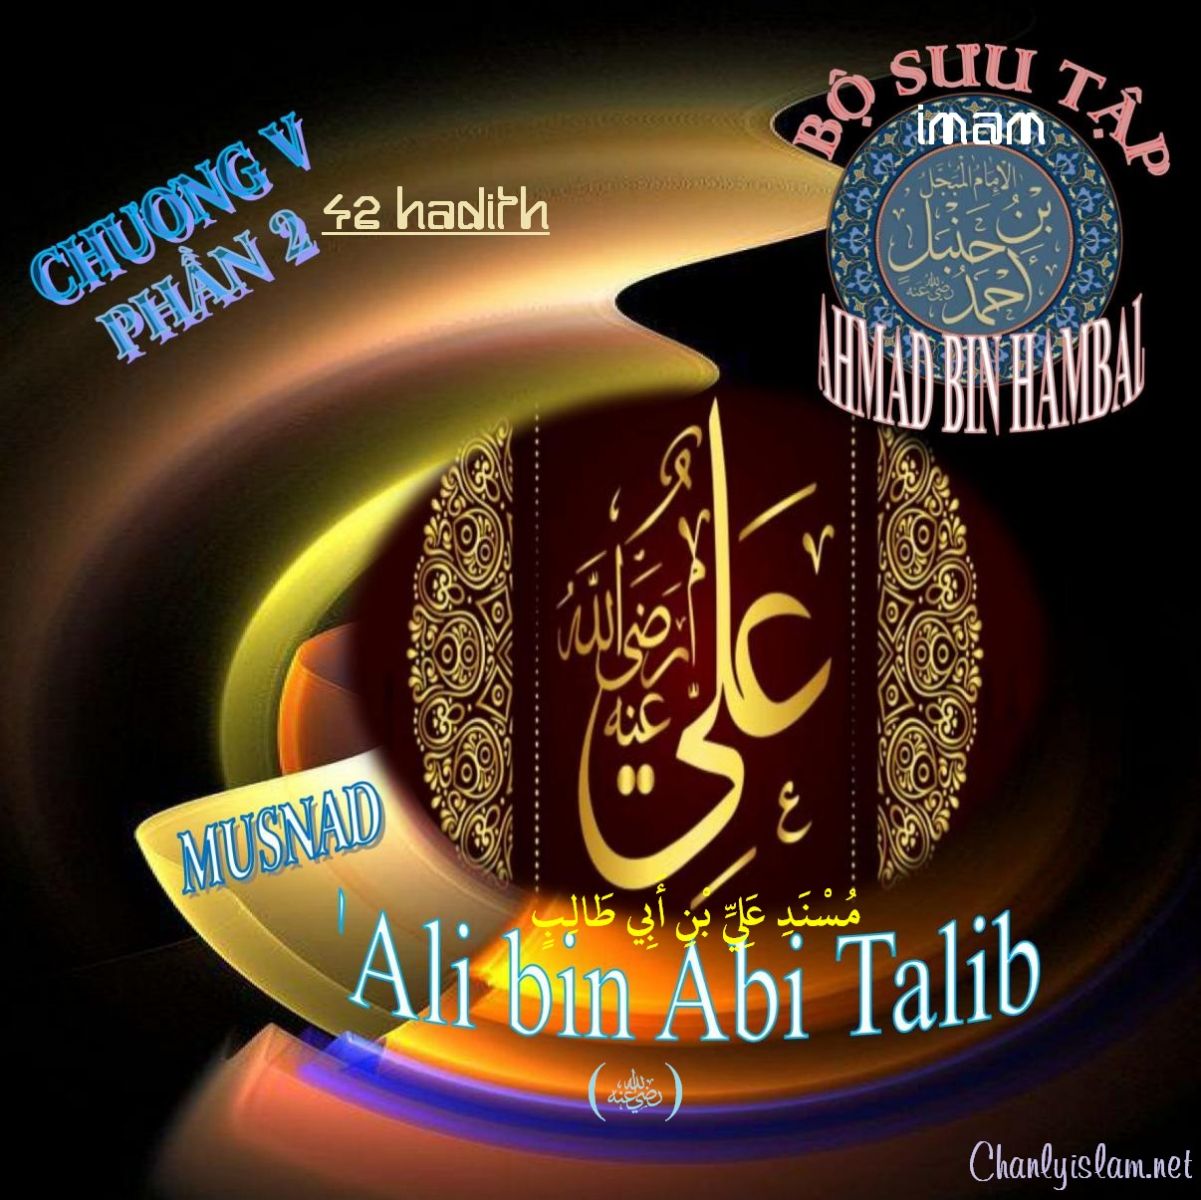 BỘ SƯU TẬP MUSNAD IMAM AHMAD IBN HANBAL - CHƯƠNG V - MUSNAD ALI BIN ABI TALIB - PHẦN 2